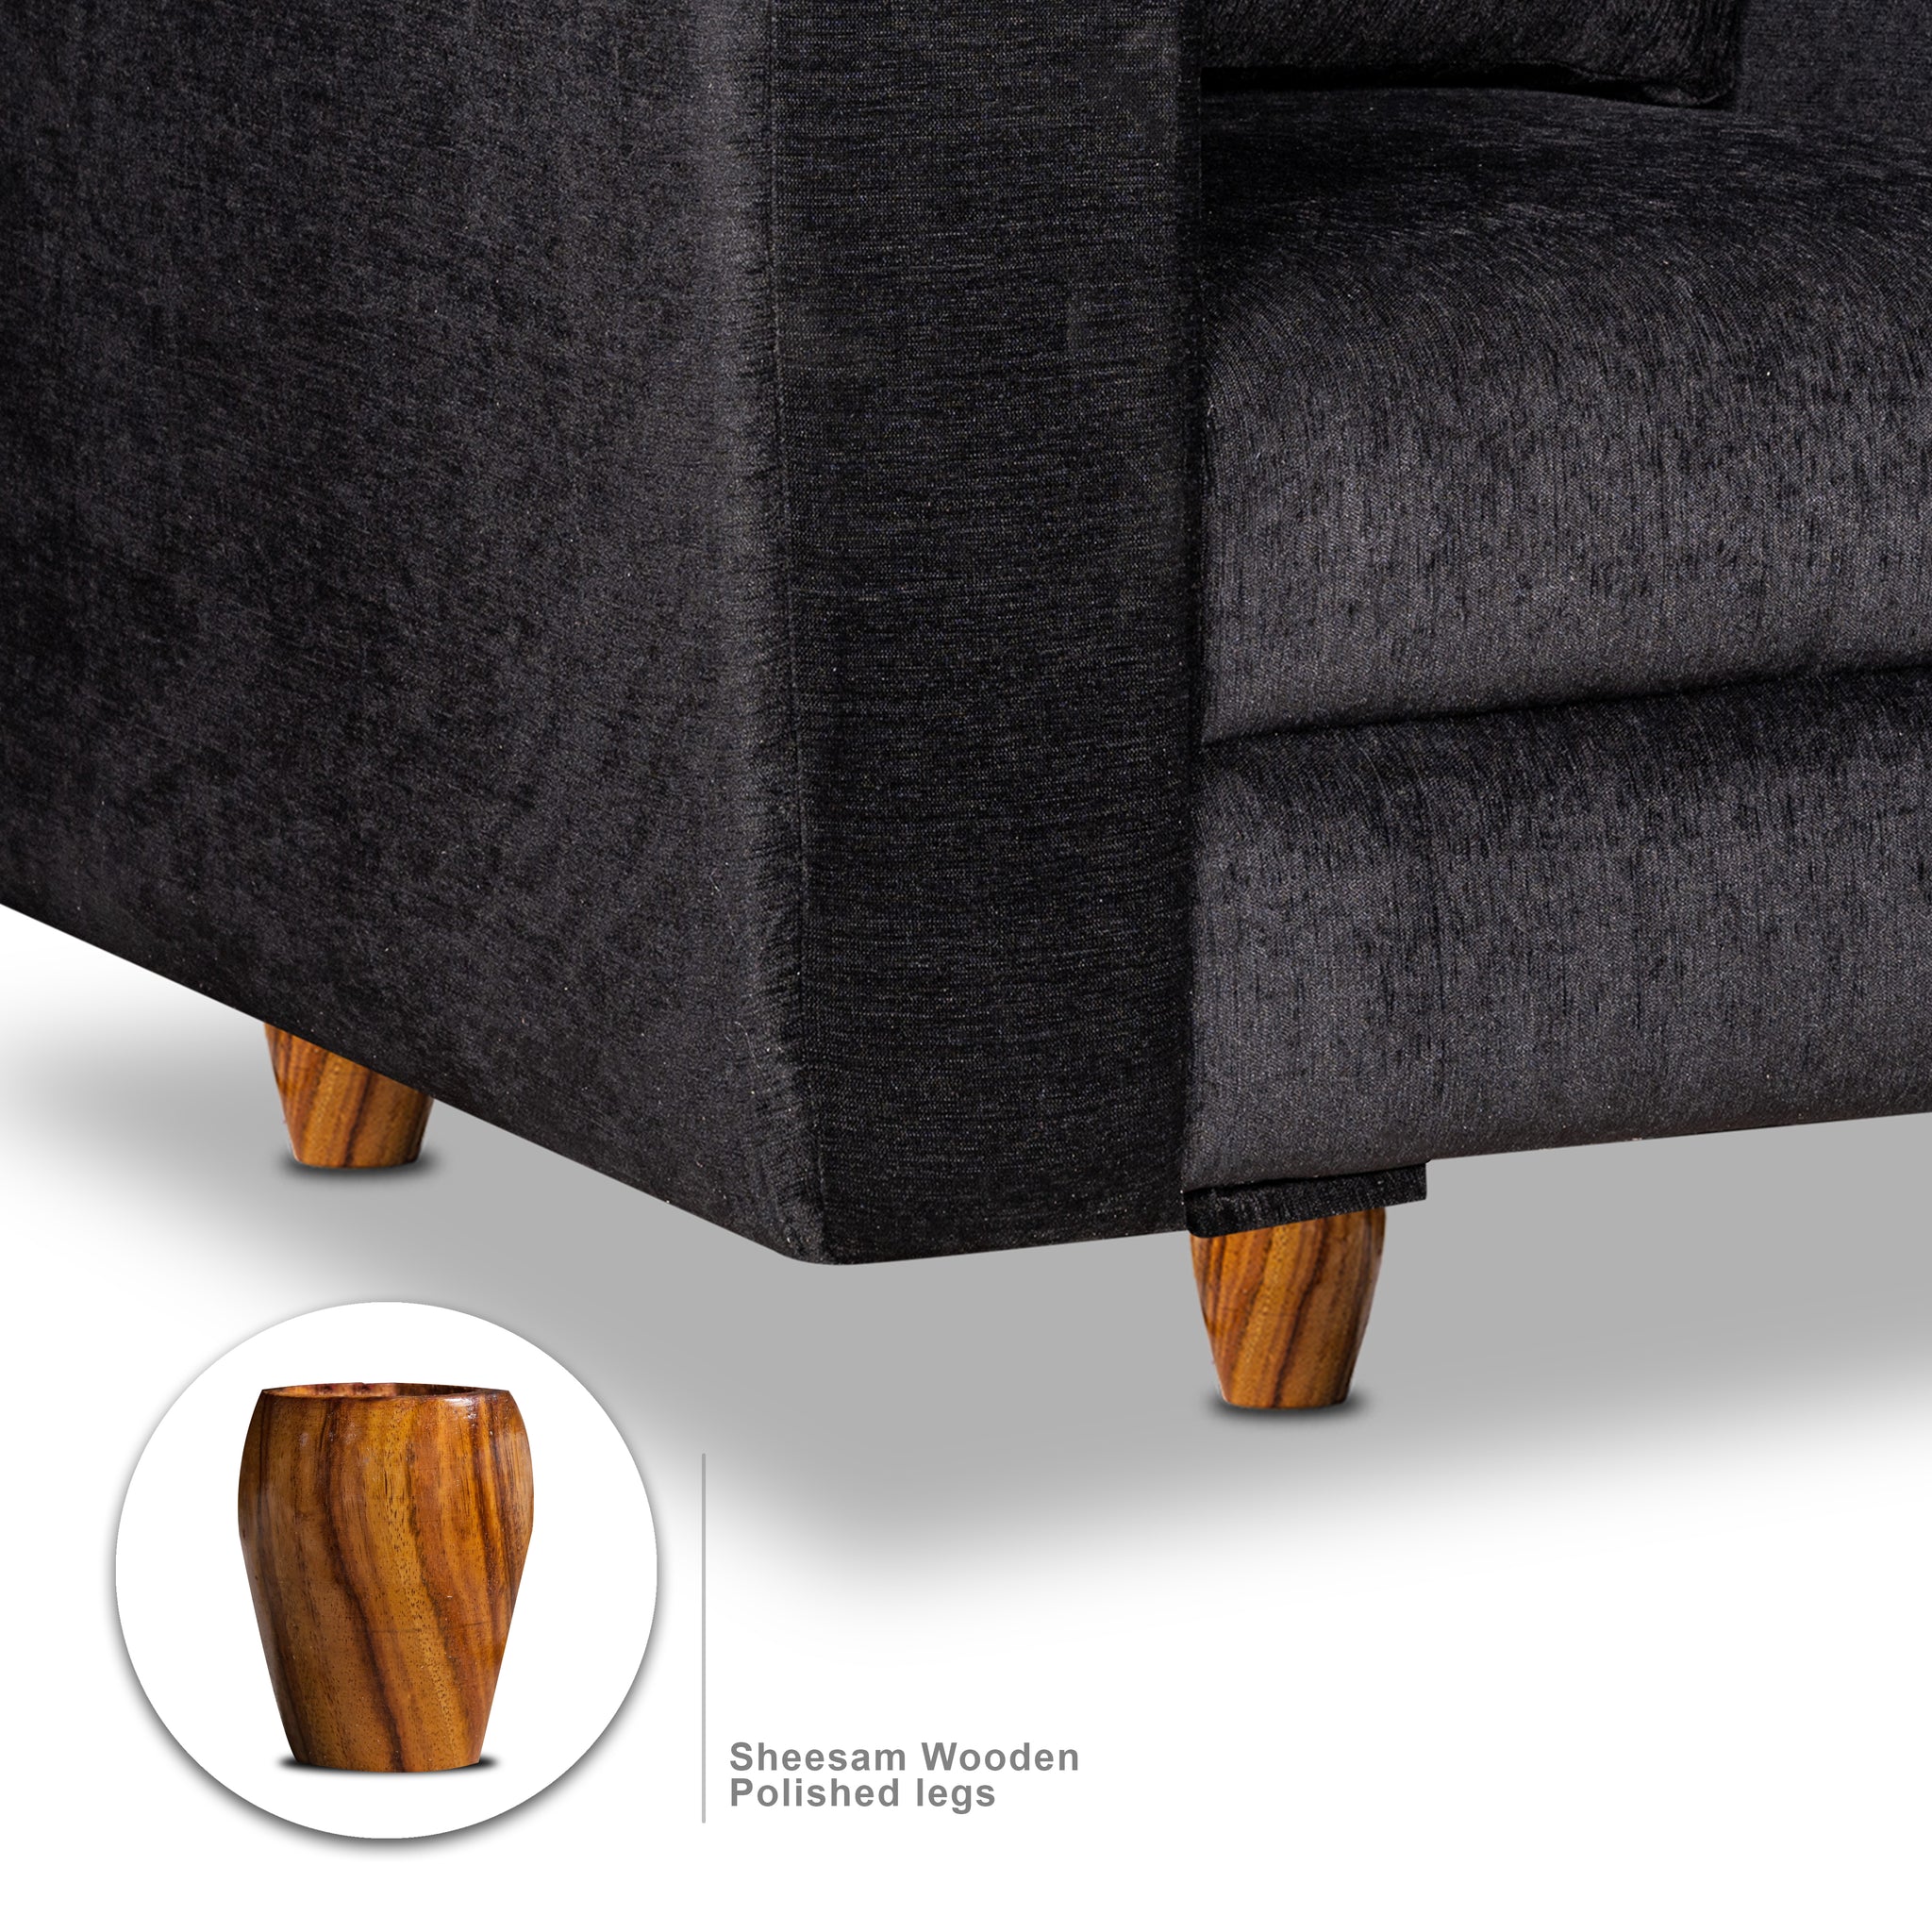 Rio 5 Seater Sofa Set, Chenille Molfino Fabric (Finish Color -Black, Style - 3 + 1 + 1)